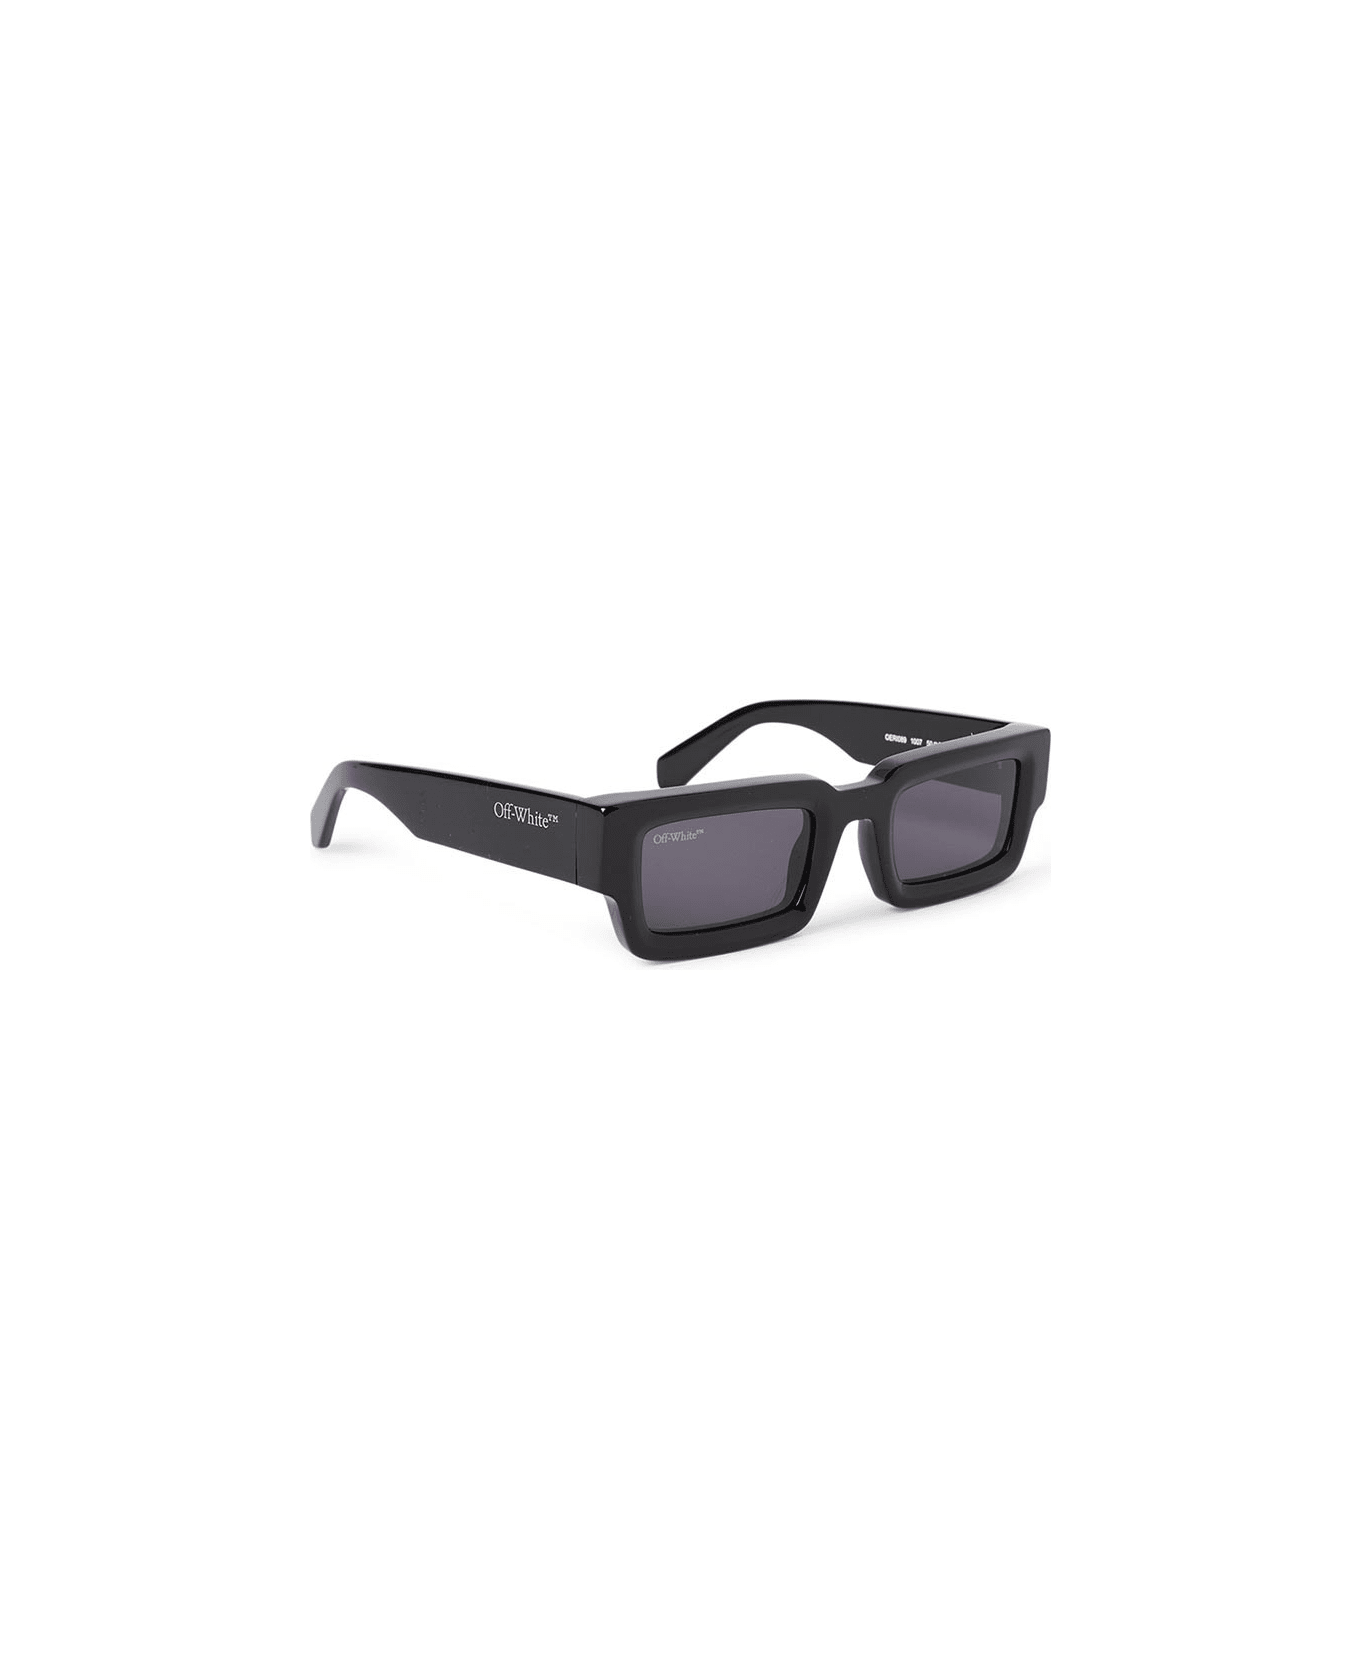 Off-White Lecce Sunglasses - Nero/Grigio